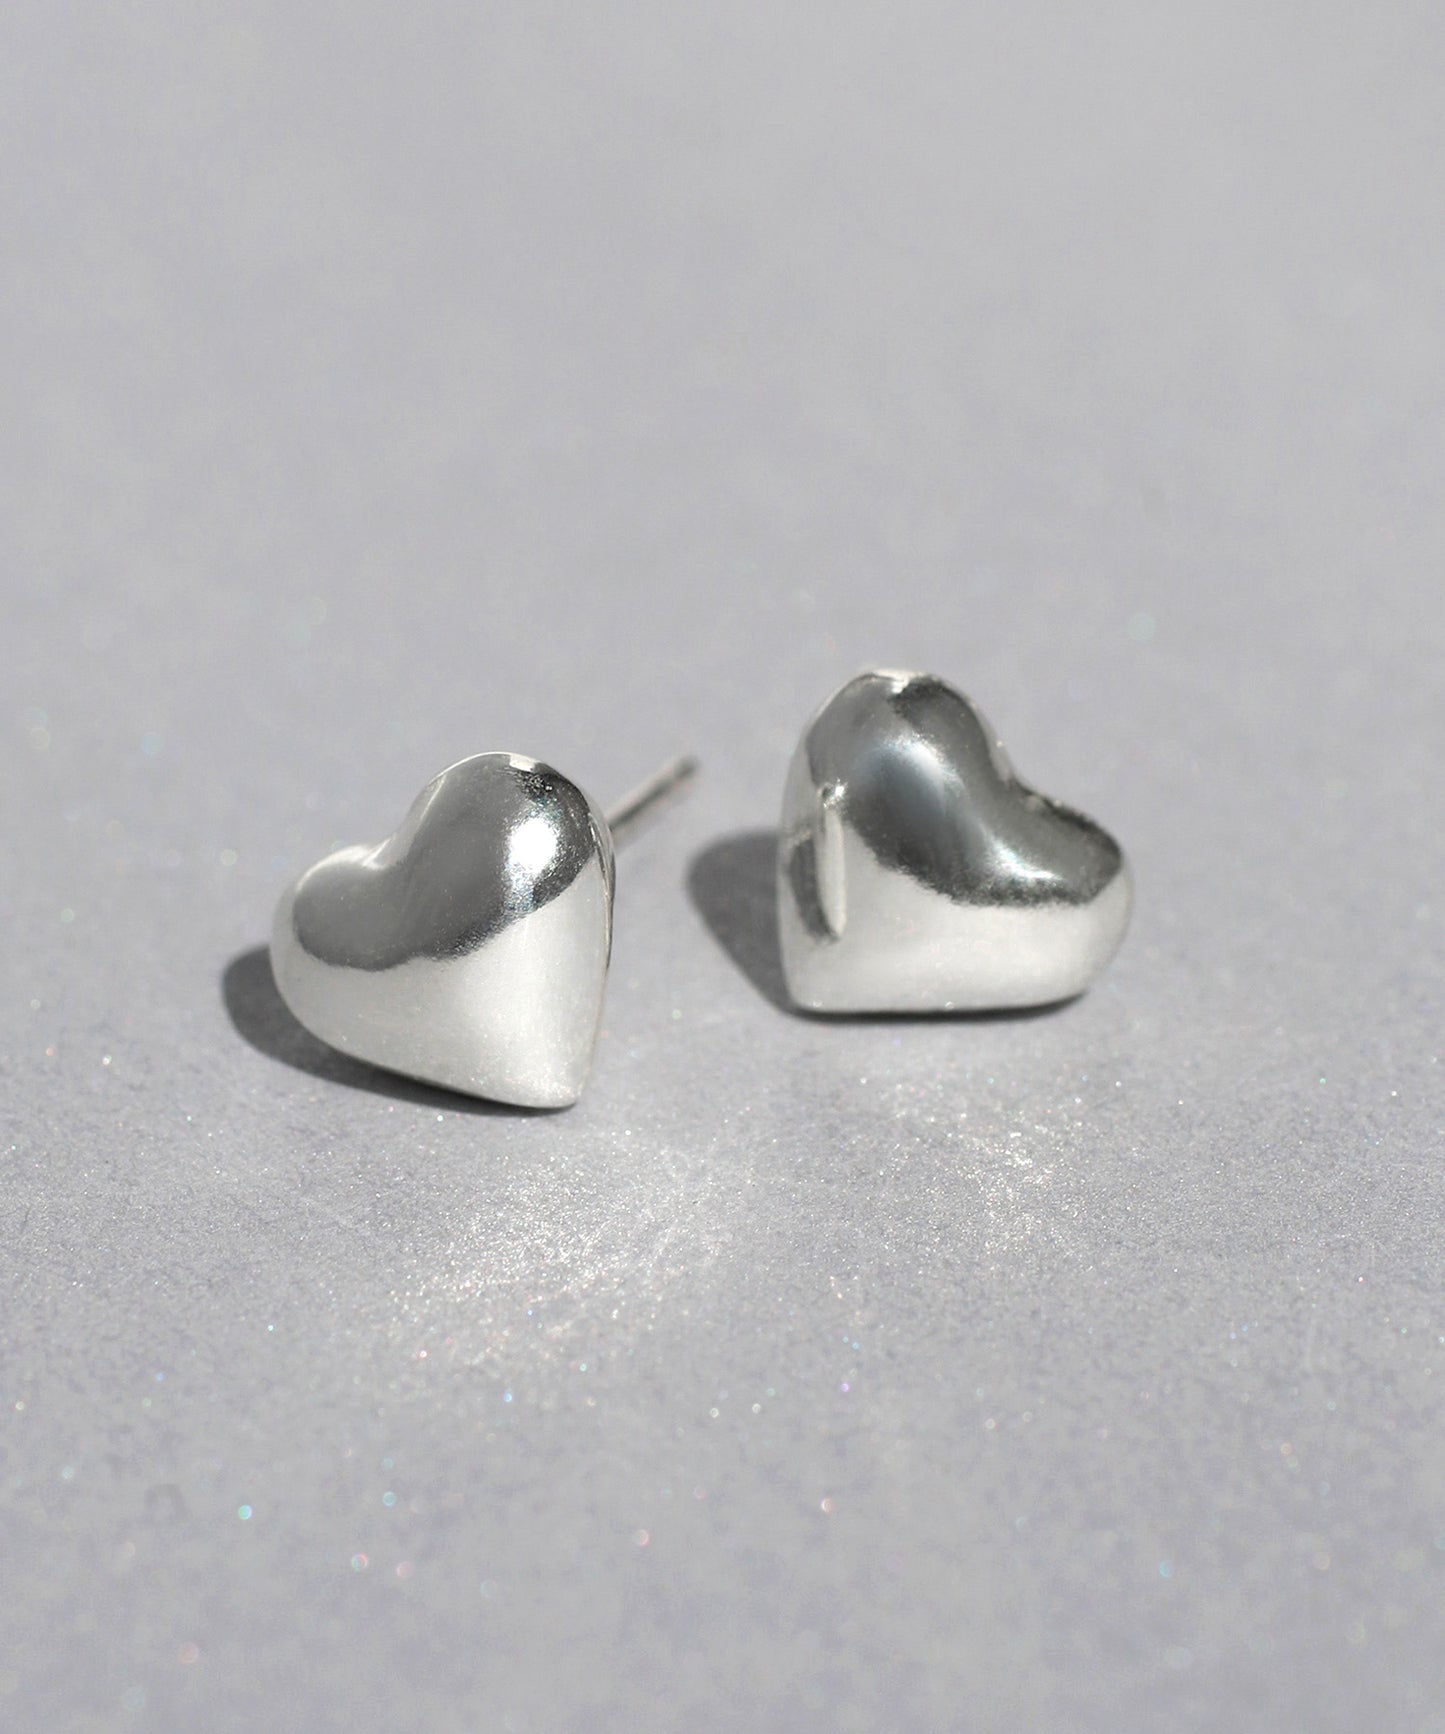 Heart Earrings [925 silver]